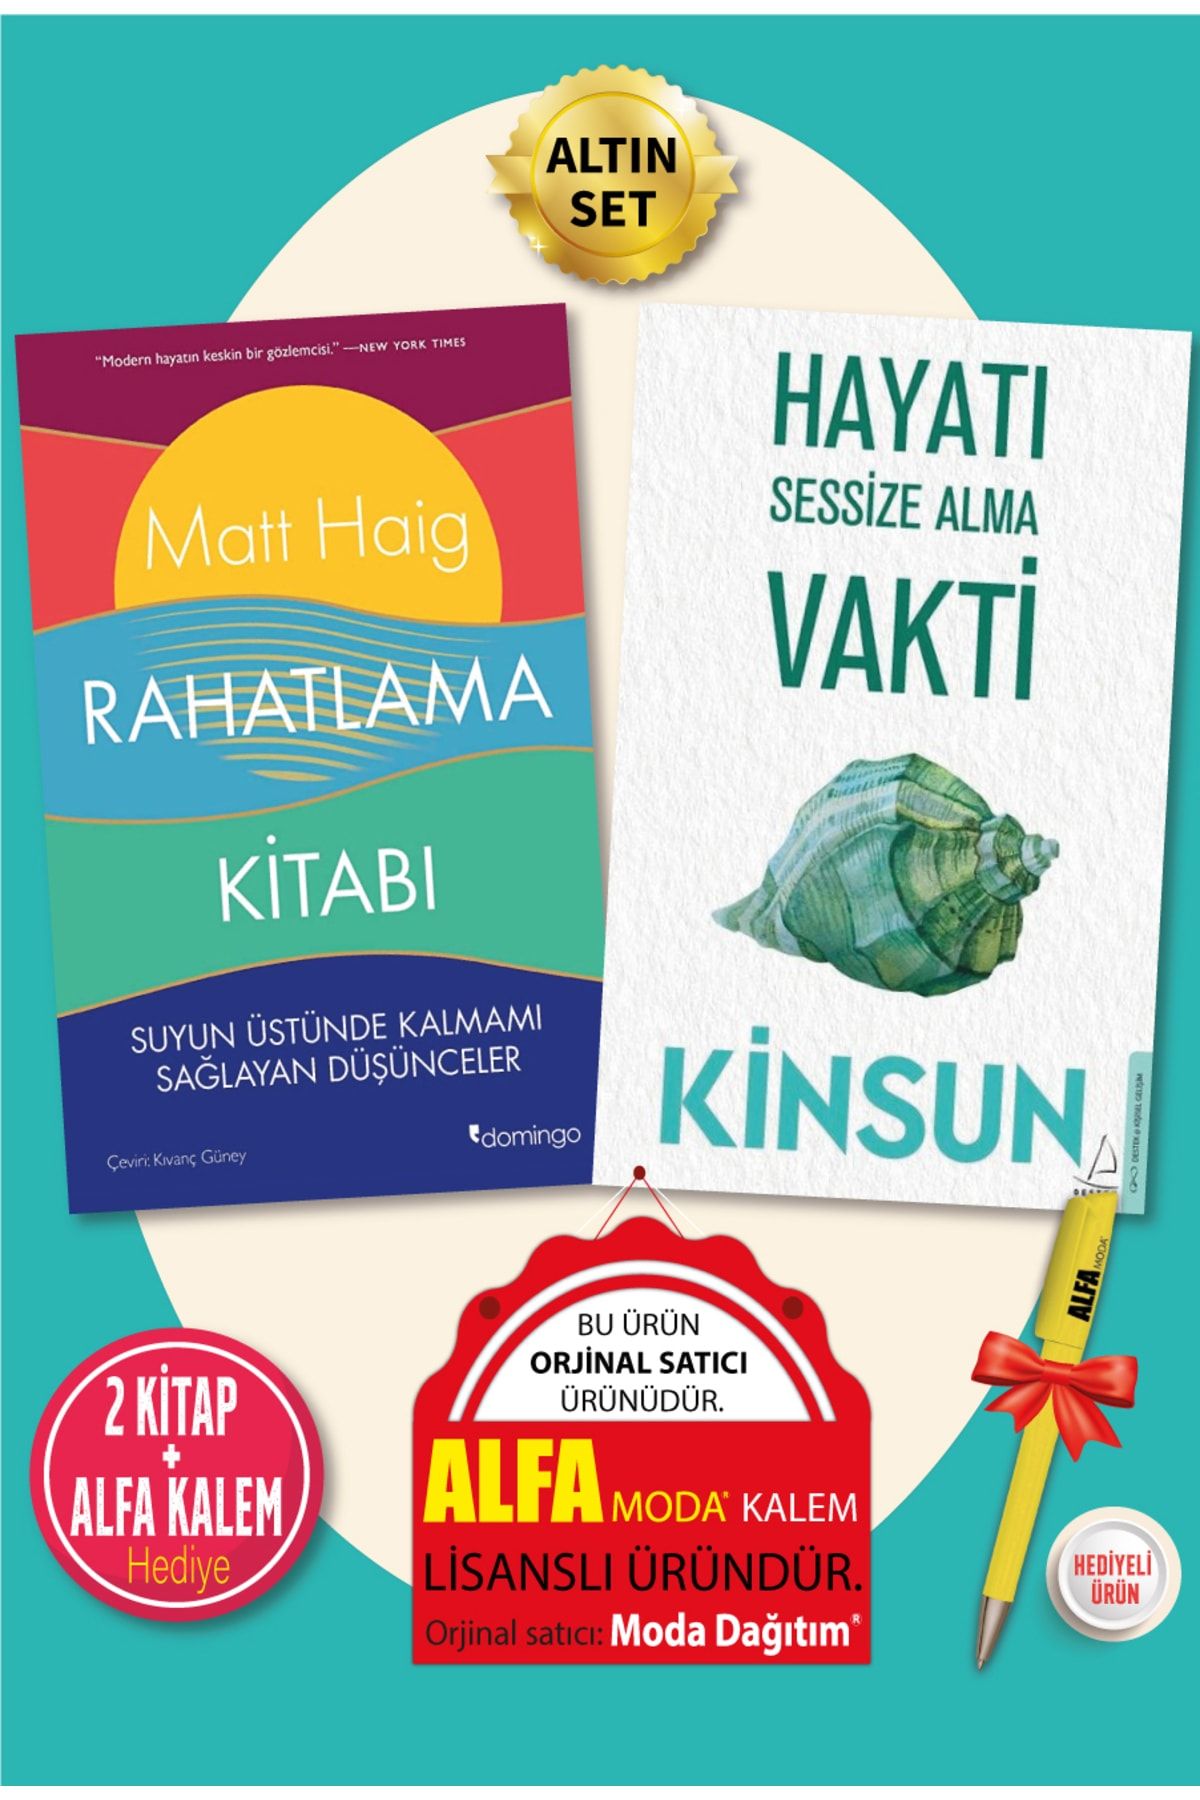 Destek Yayınları Rahatlama Kitabı (matt Haig) + Hayatı Sessize Alma Vakti (kinsun) 2 Kitap + Alfa Kalem Hediye